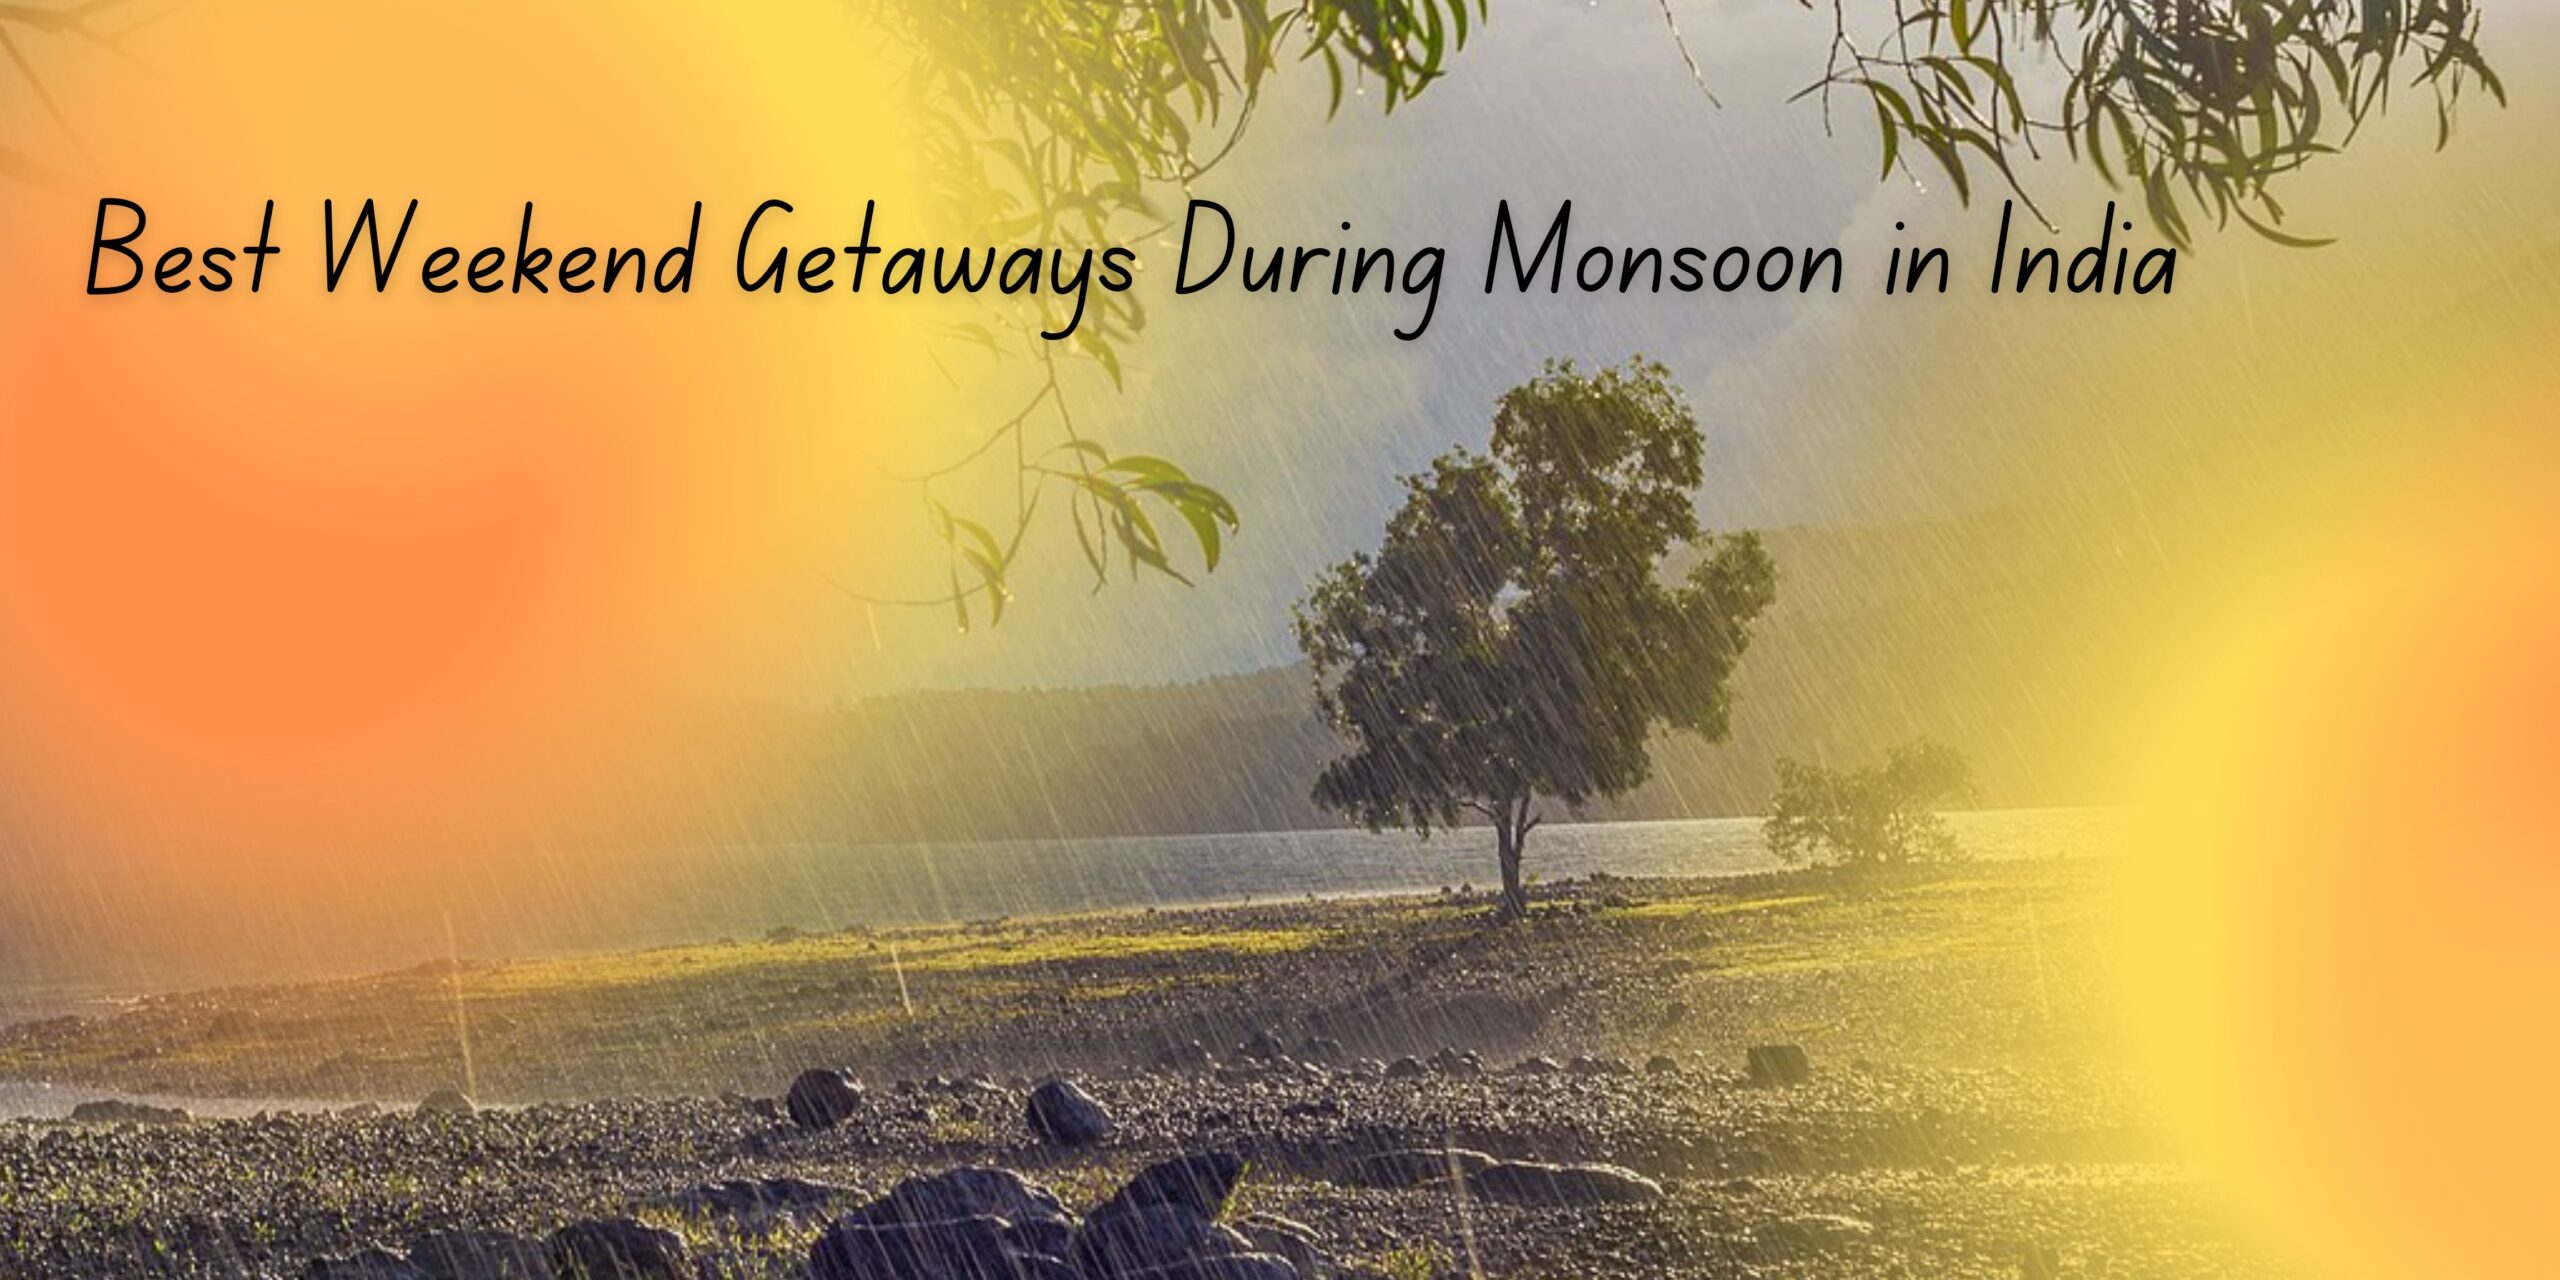 Best Weekend Getaways During Monsoon in India